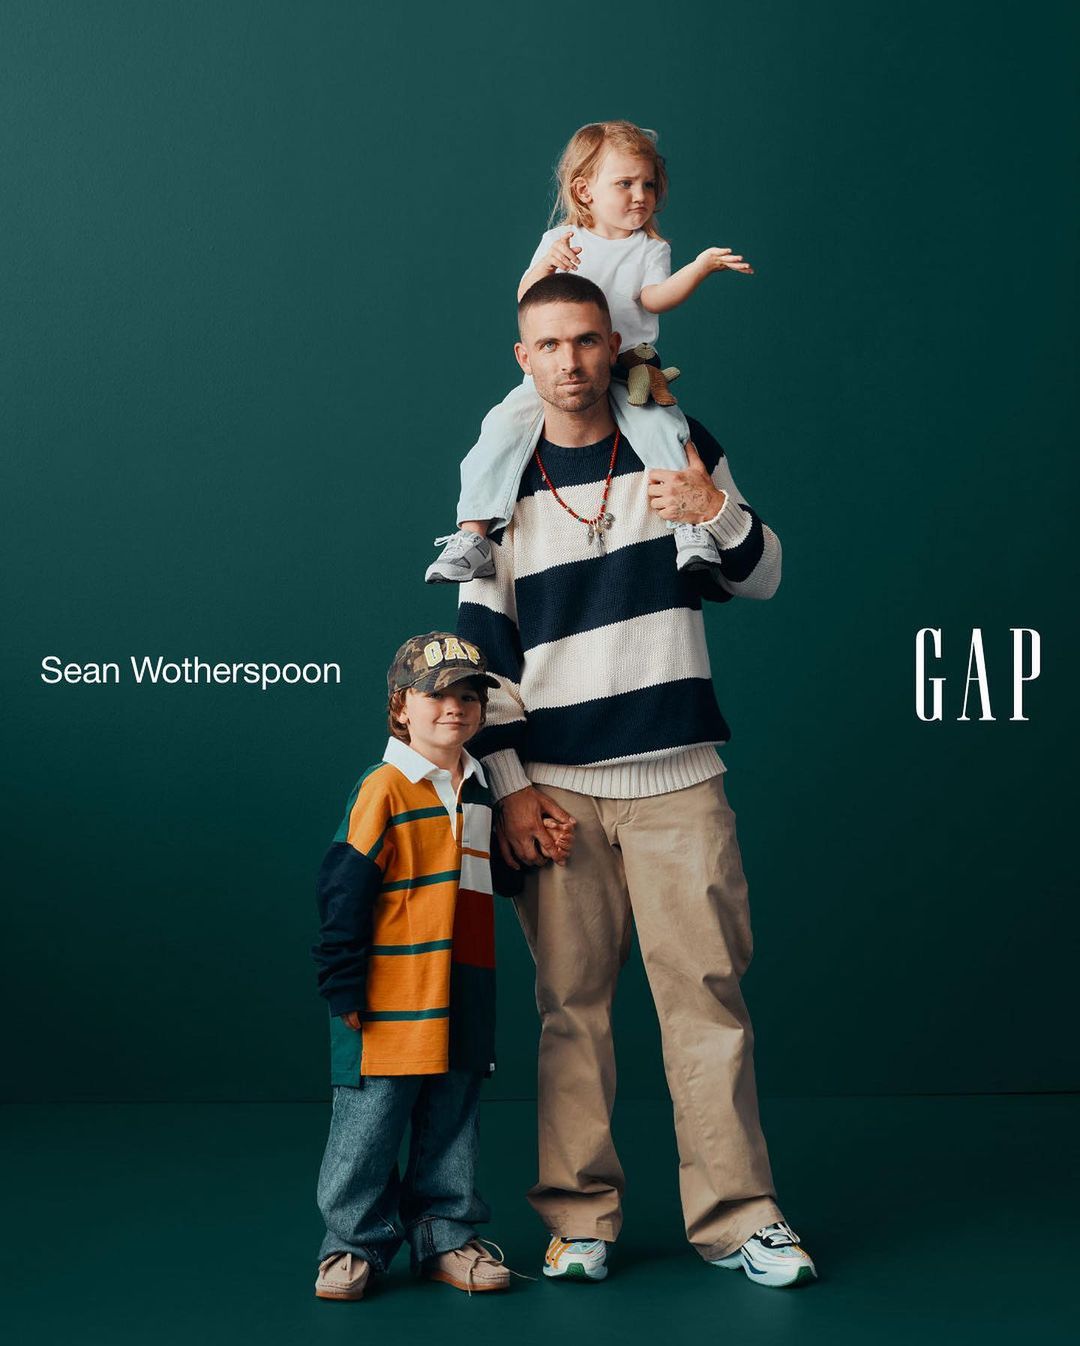 購入をお願い致しますold gap sean wotherspoon ショーンウェザスプーン